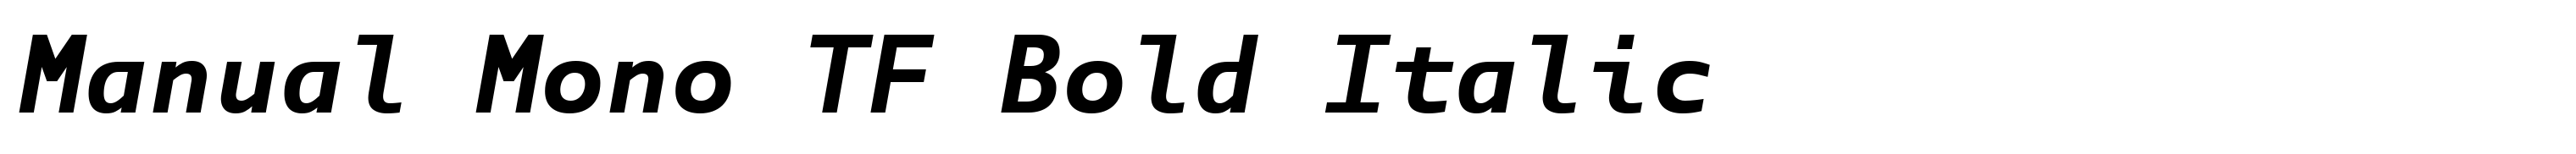 Manual Mono TF Bold Italic